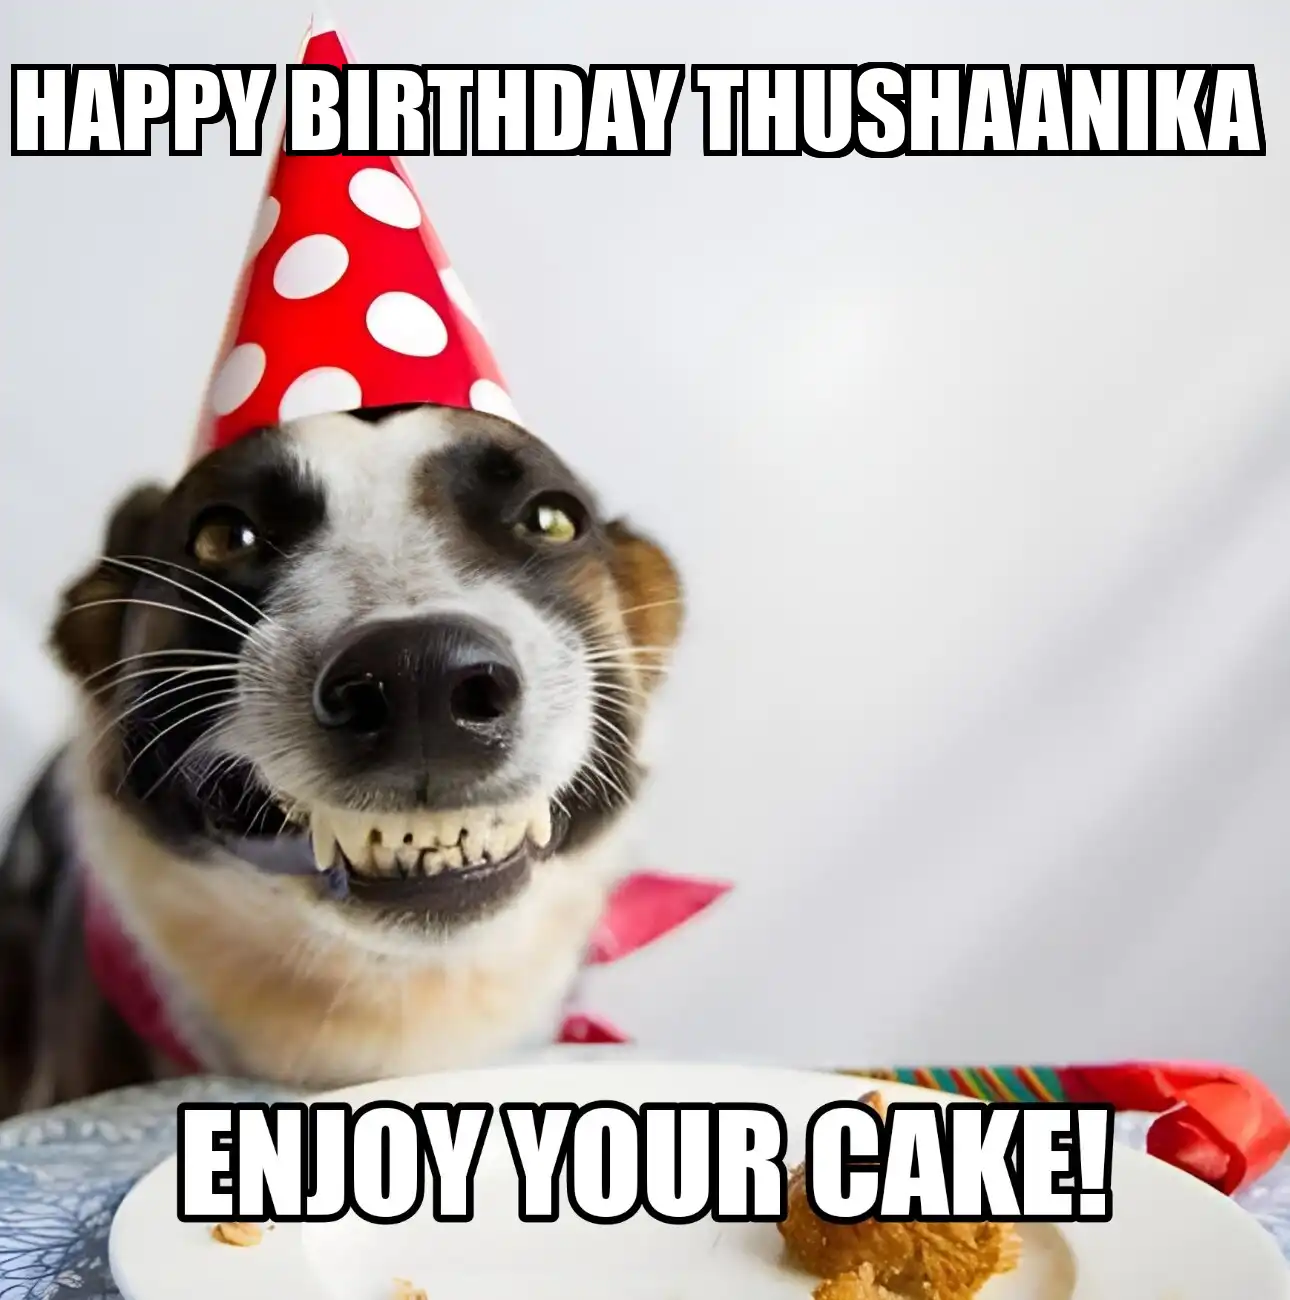 Happy Birthday Thushaanika Enjoy Your Cake Dog Meme